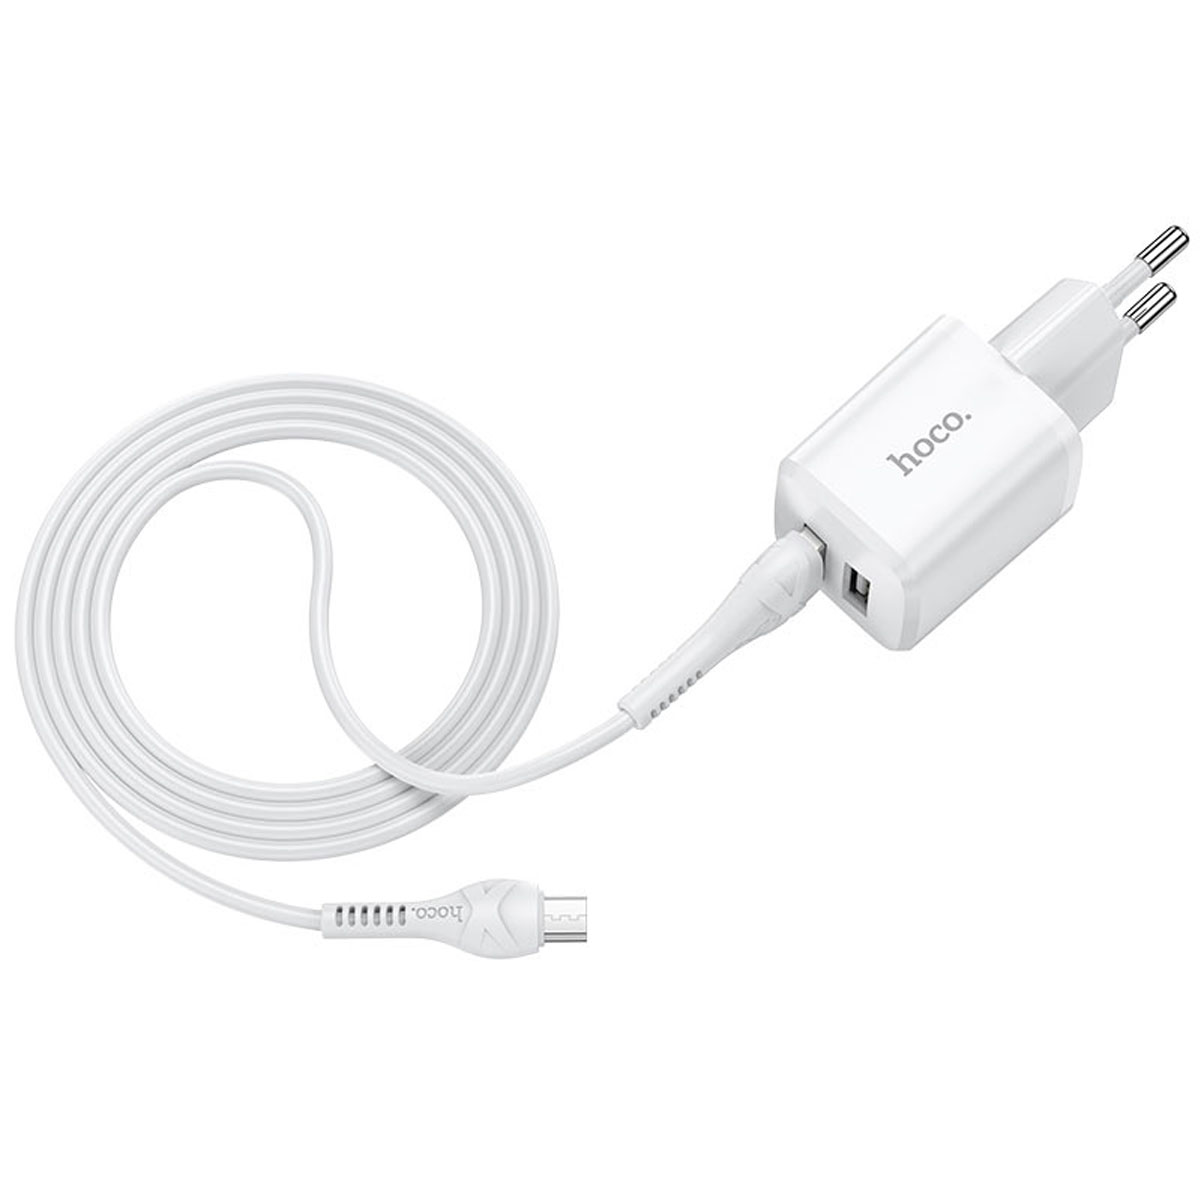 СЗУ (Сетевое зарядное устройство) HOCO N8 Briar с кабелем Micro USB, 2.4A, 2 USB, длина 1 метр, цвет белый